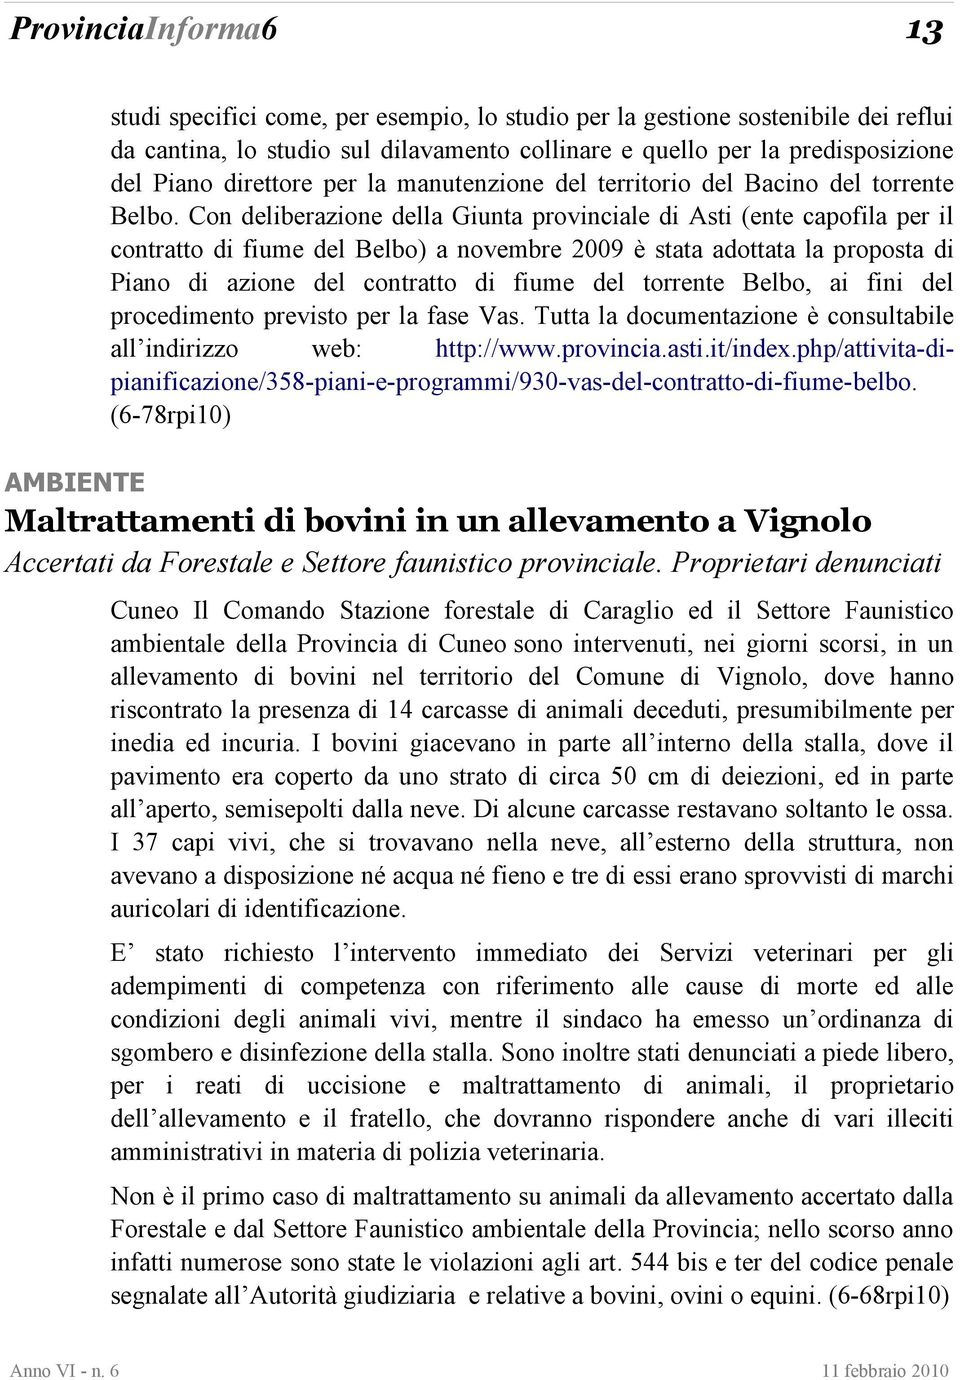 Con deliberazione della Giunta provinciale di Asti (ente capofila per il contratto di fiume del Belbo) a novembre 2009 è stata adottata la proposta di Piano di azione del contratto di fiume del